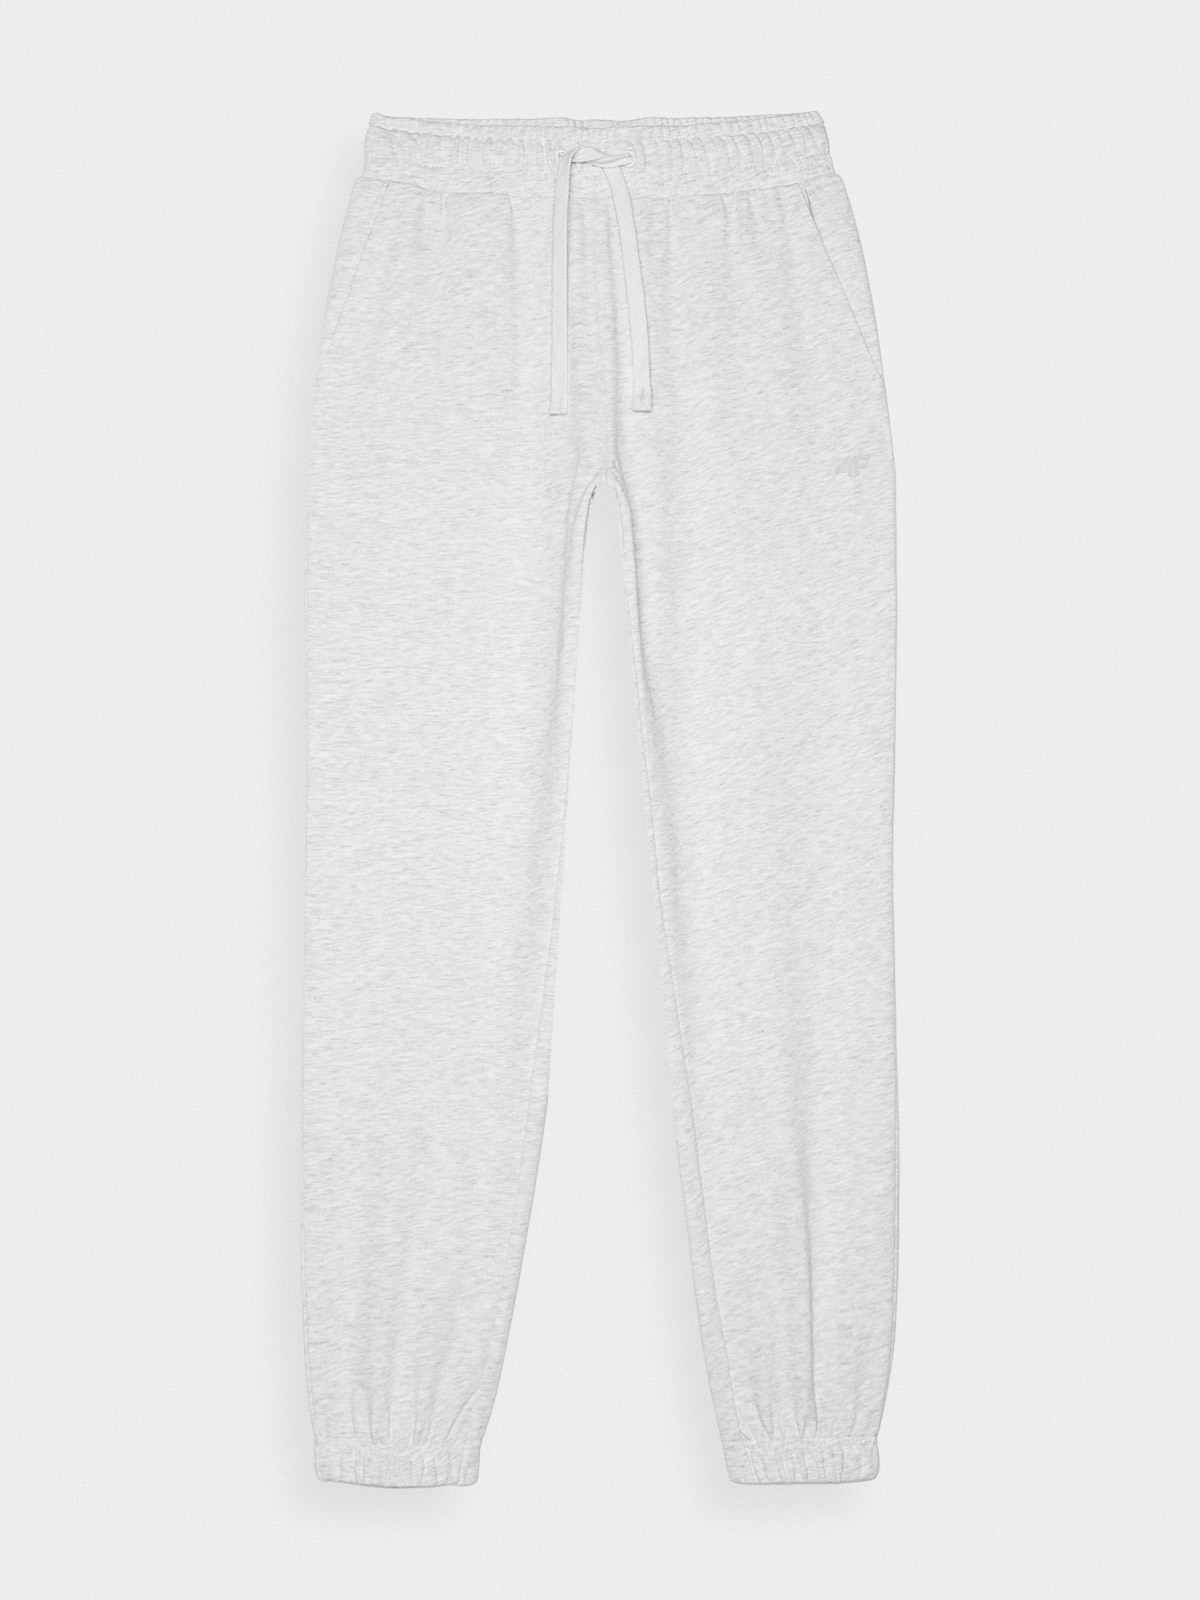 Dámske teplákové nohavice typu jogger - šedé